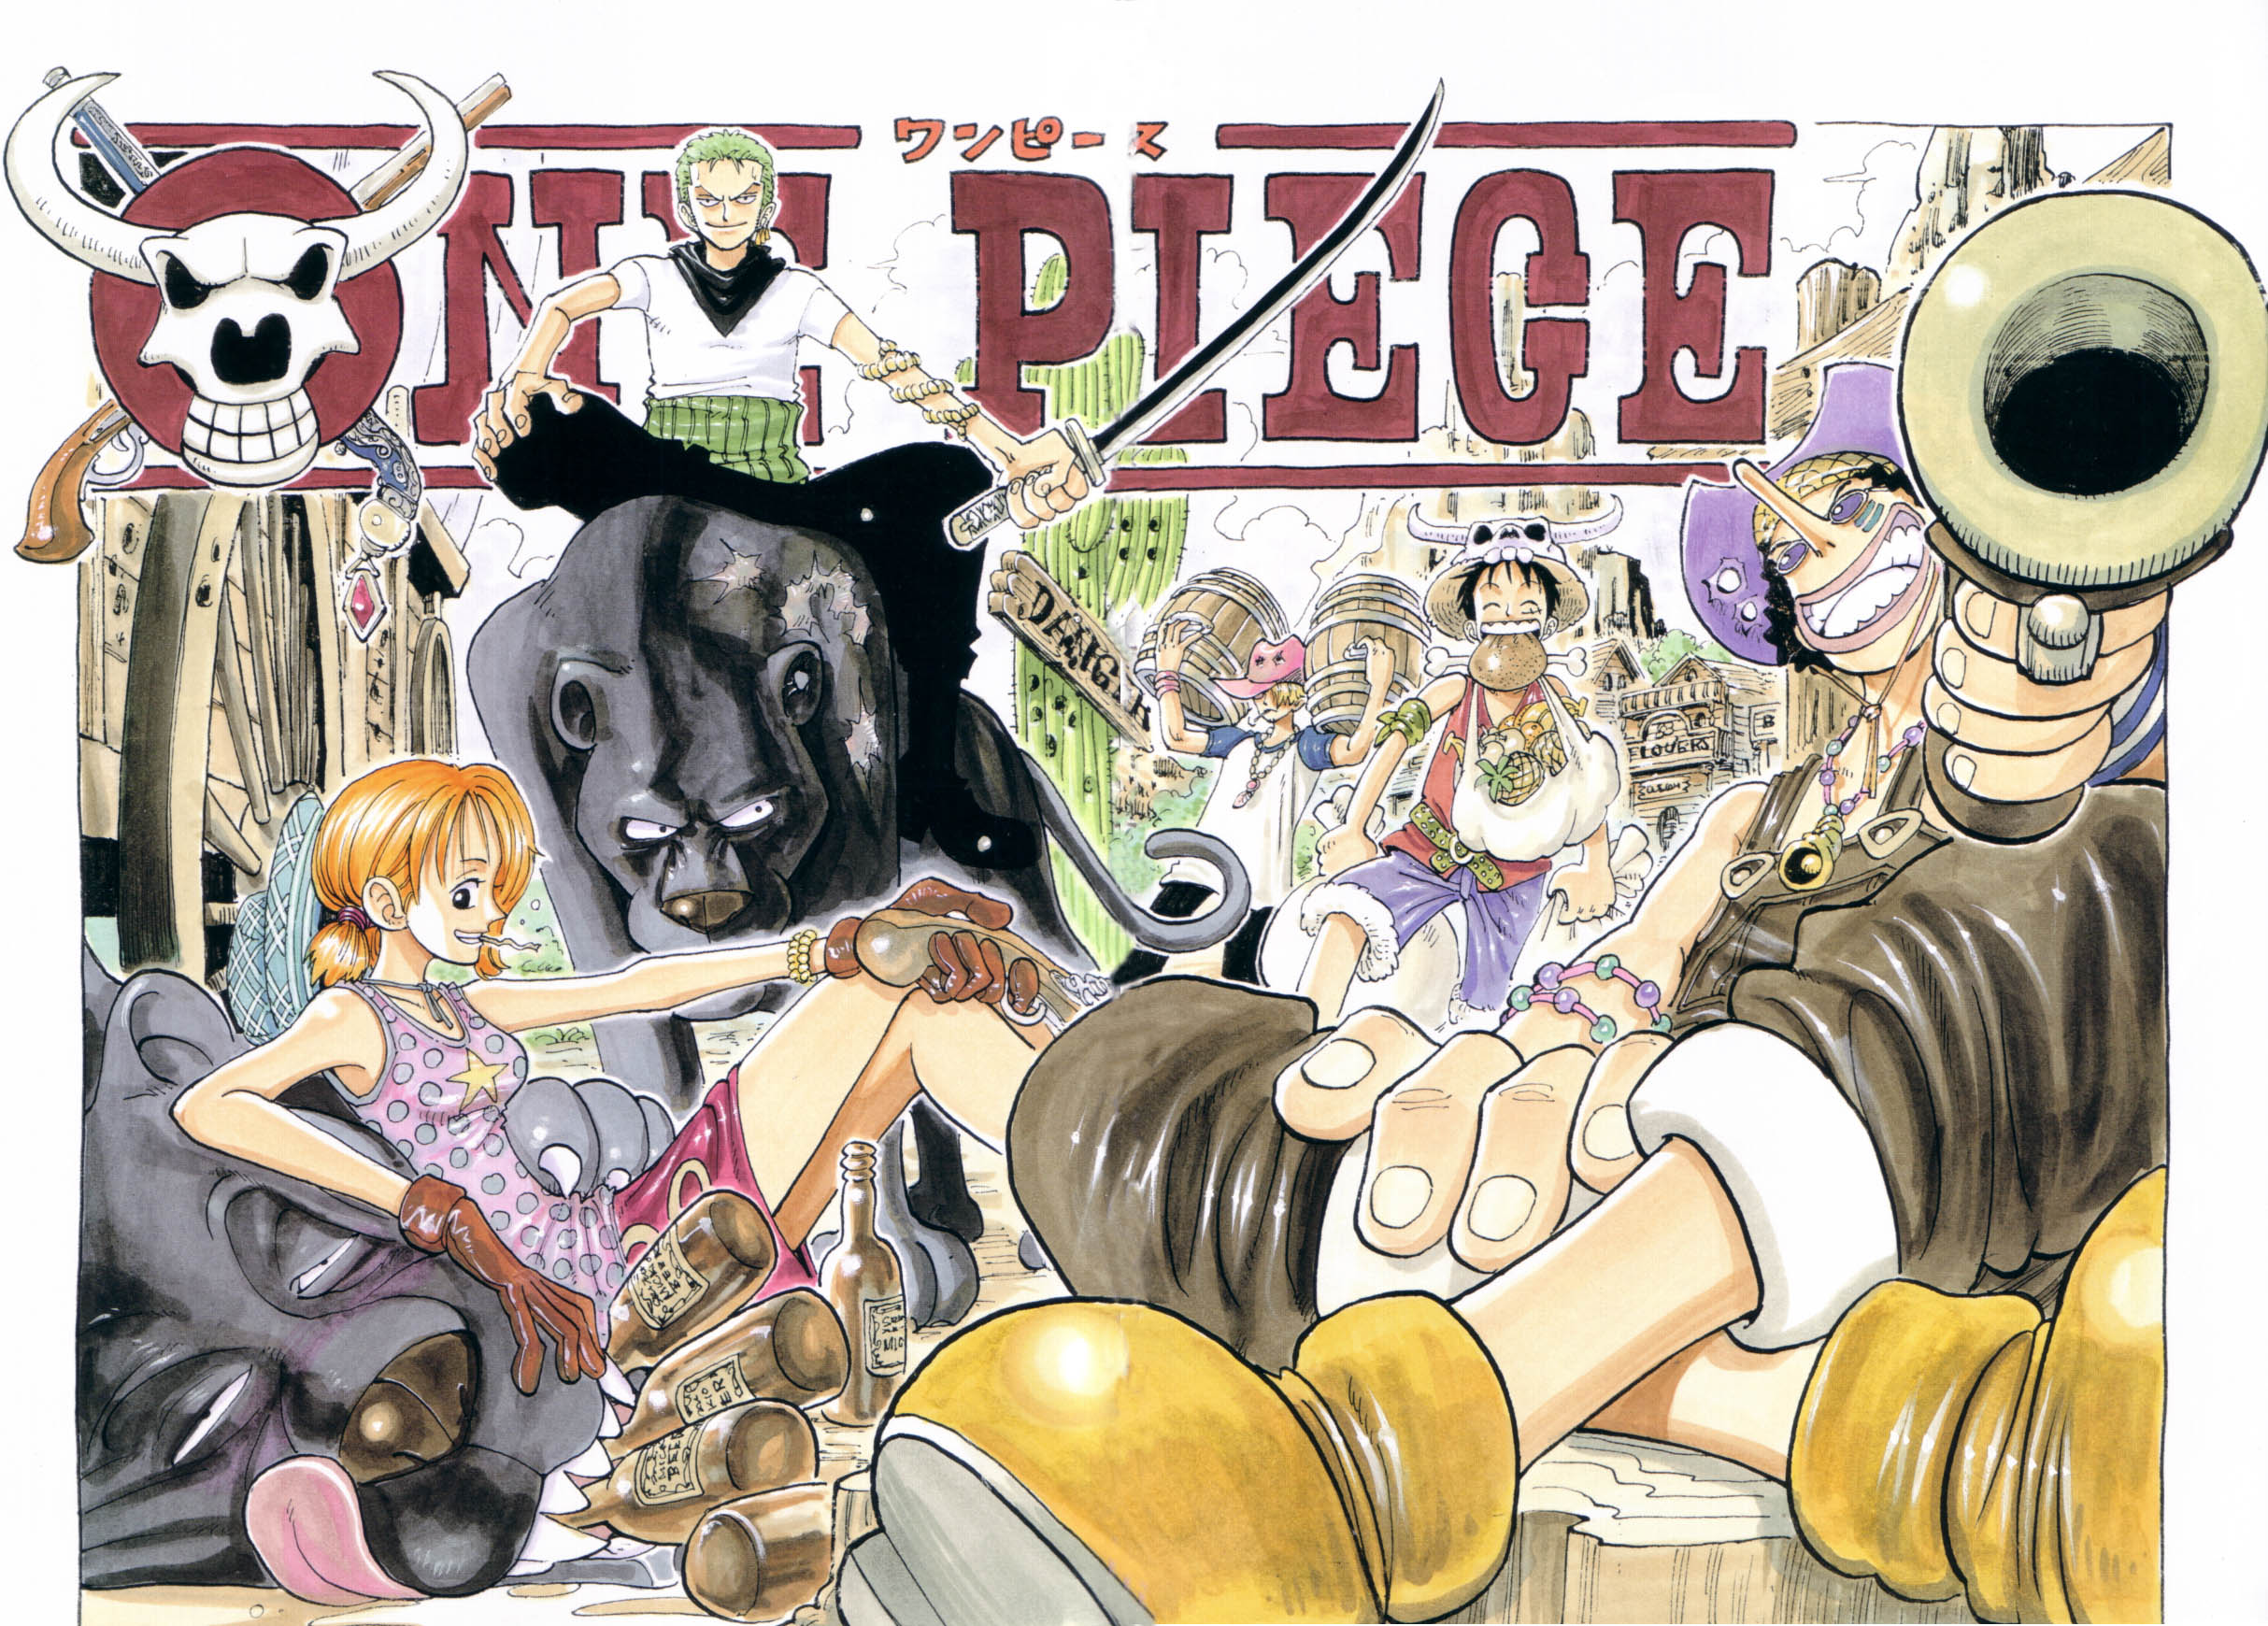 One Piece Color Walk 10 Dragon, One Piece Wiki